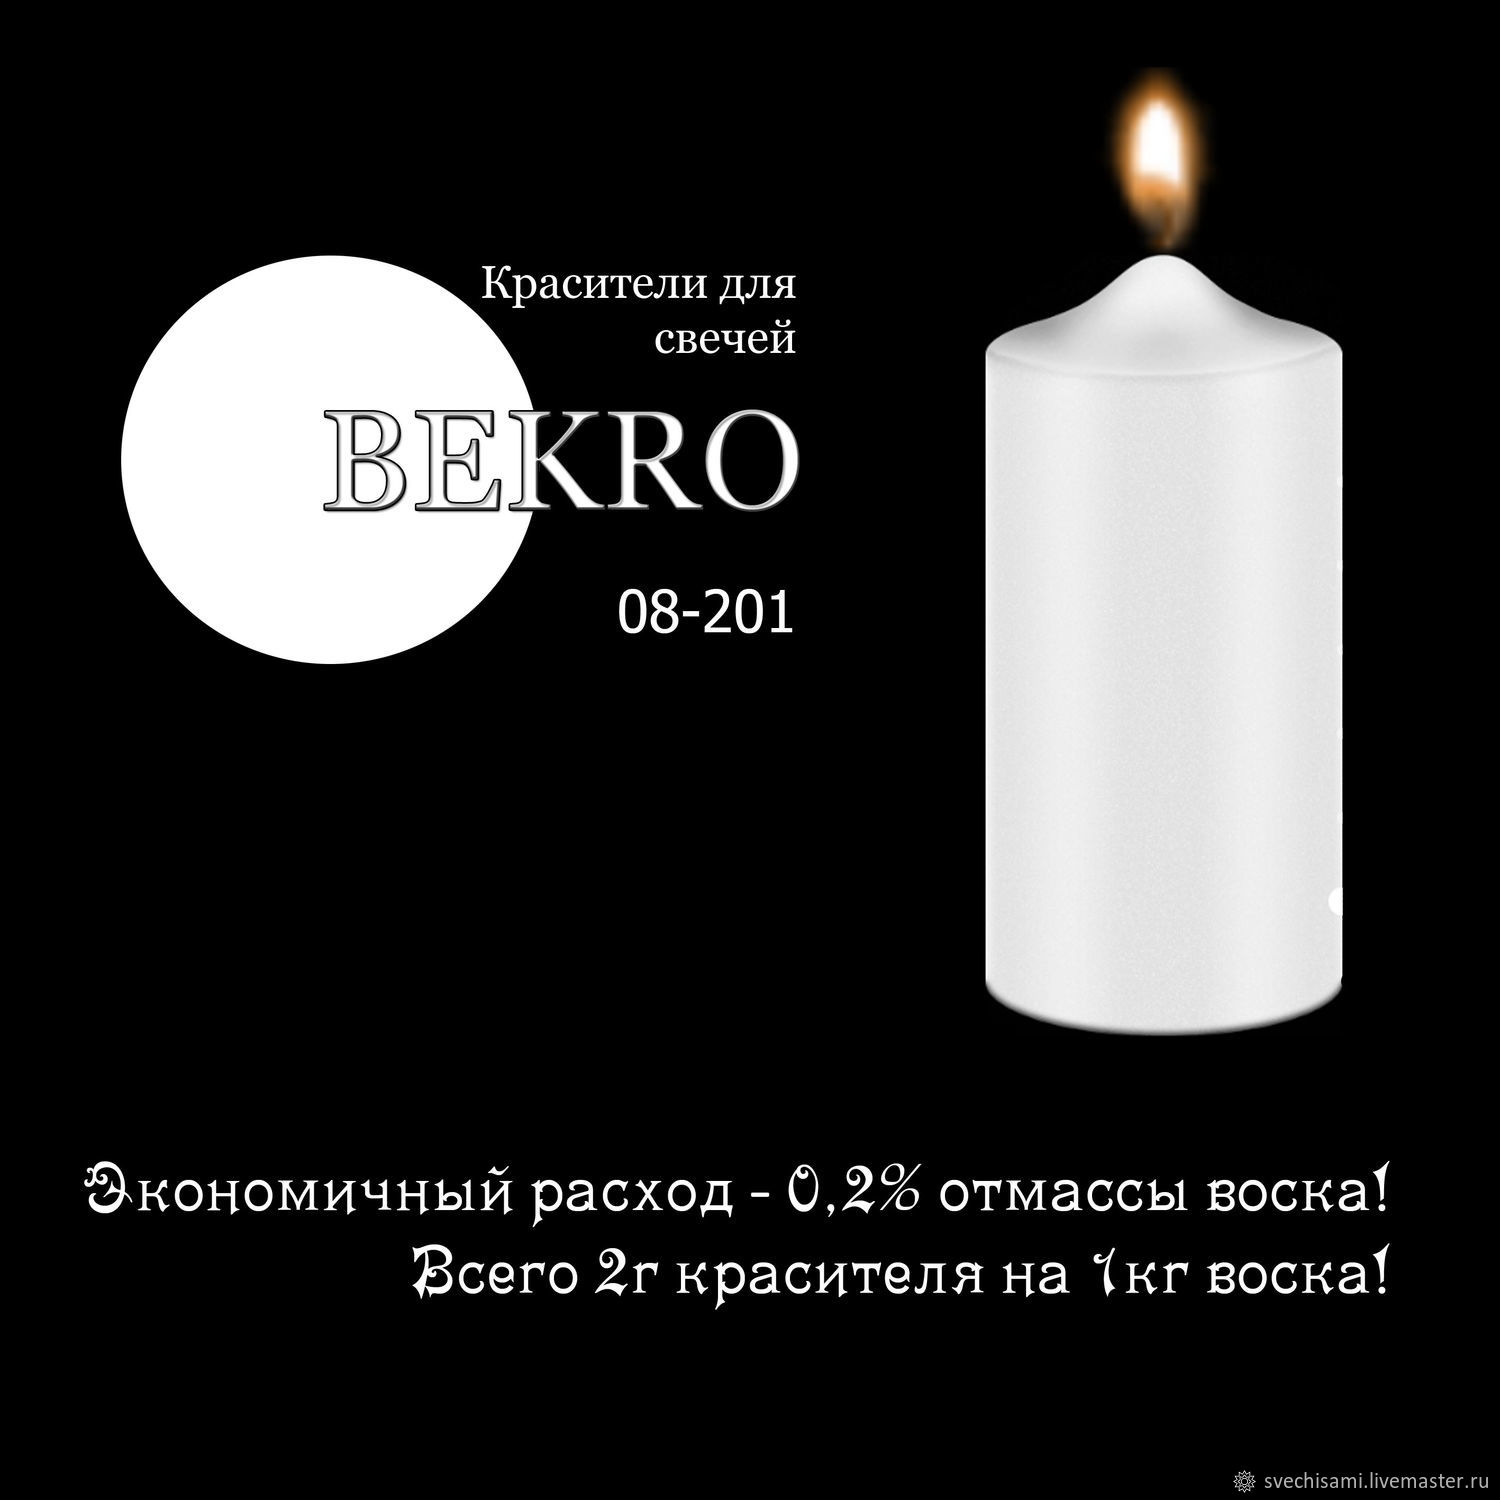 Свечи иваново купить. Краситель для свечей bekro. Bekro краска для свечи цвета. Bekro красители для свечей купить. Bekro краска для свечей палитра.